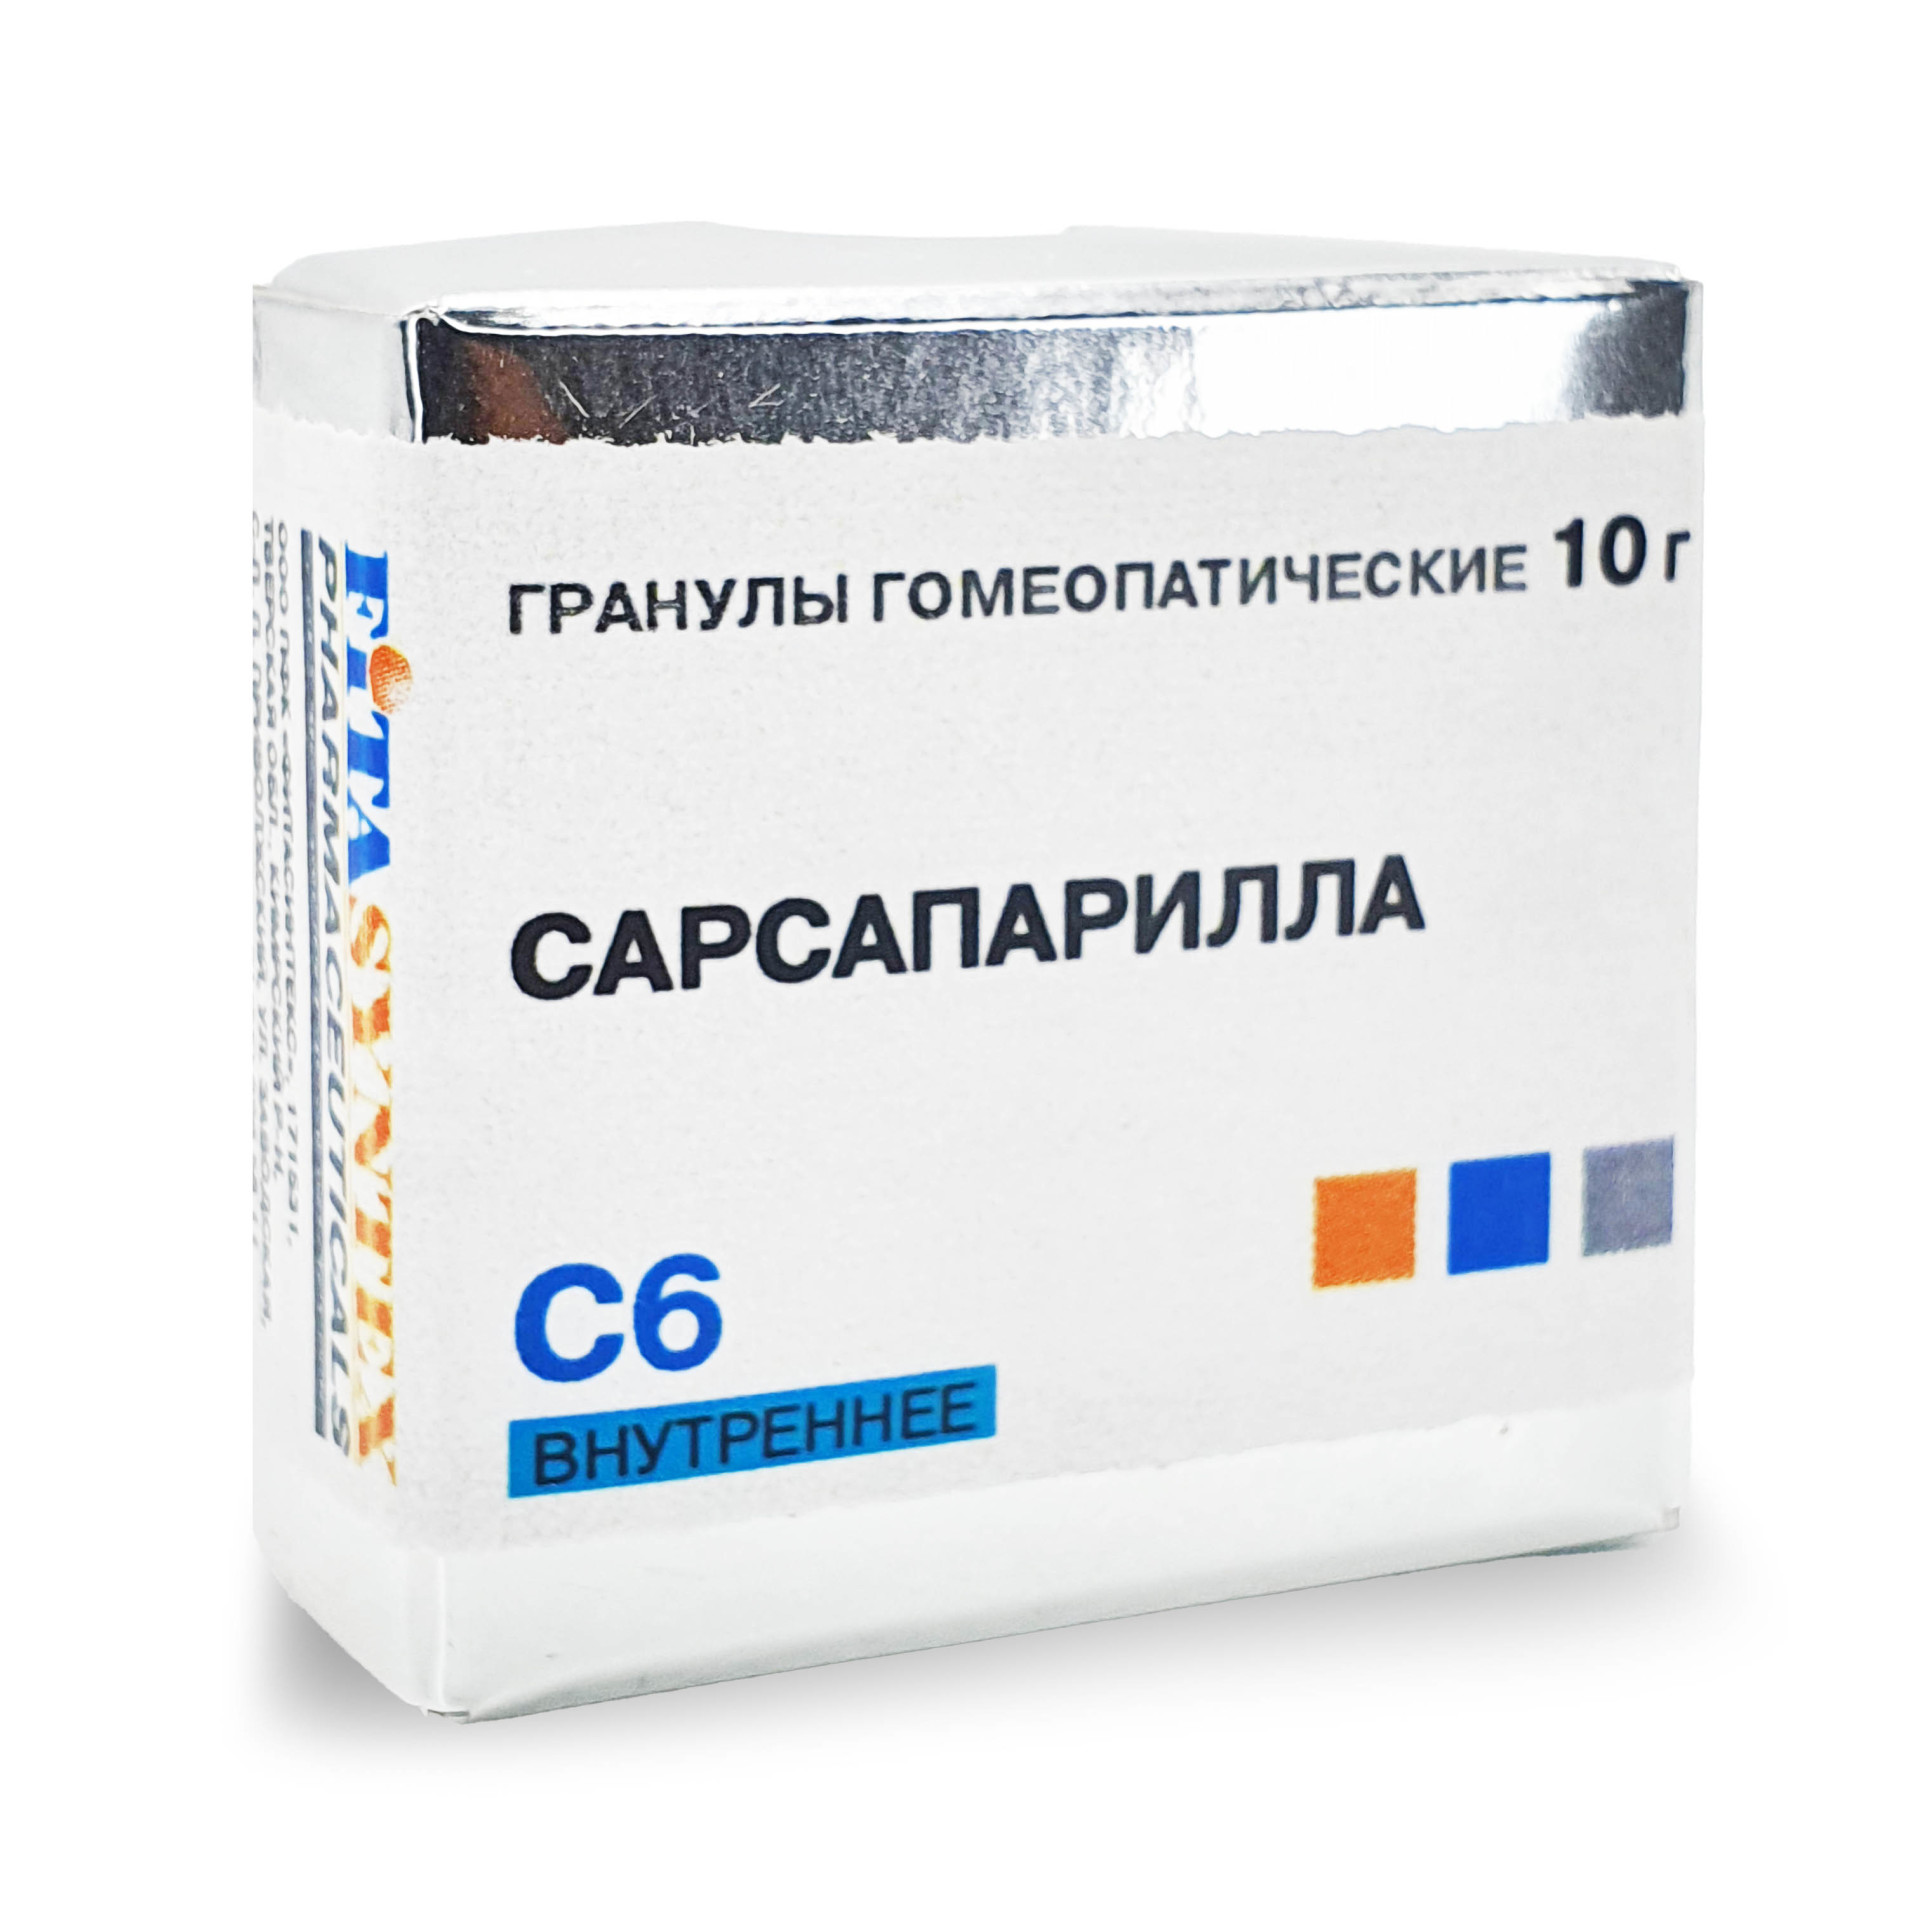 Сарсапарилла (Смилакс) С-6 гранулы 10г купить в Мытищах по цене от 172 рублей